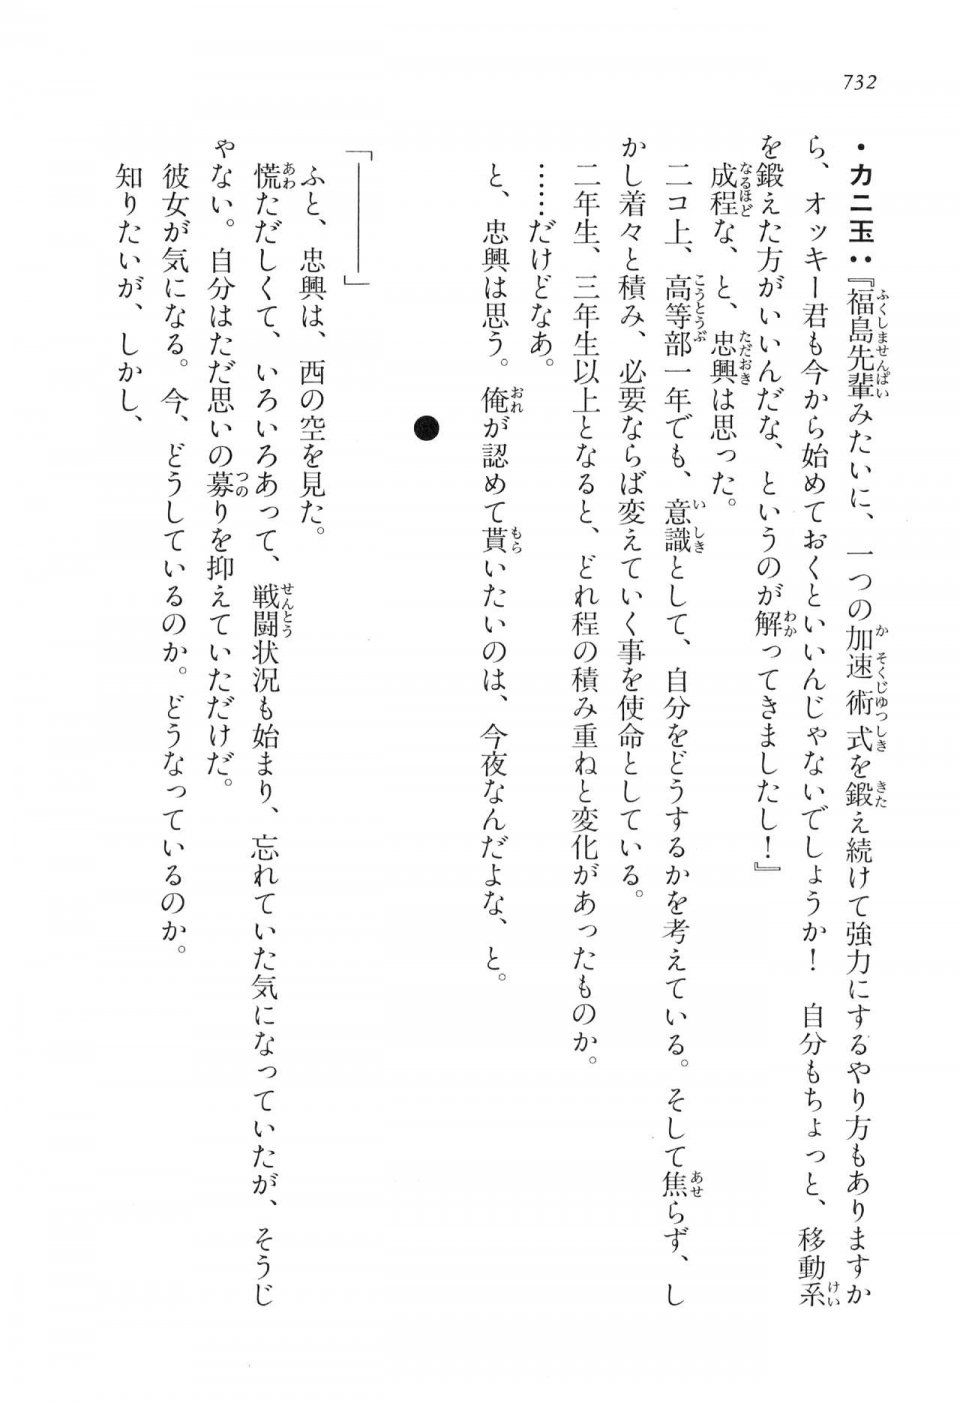 Kyoukai Senjou no Horizon LN Vol 16(7A) - Photo #732